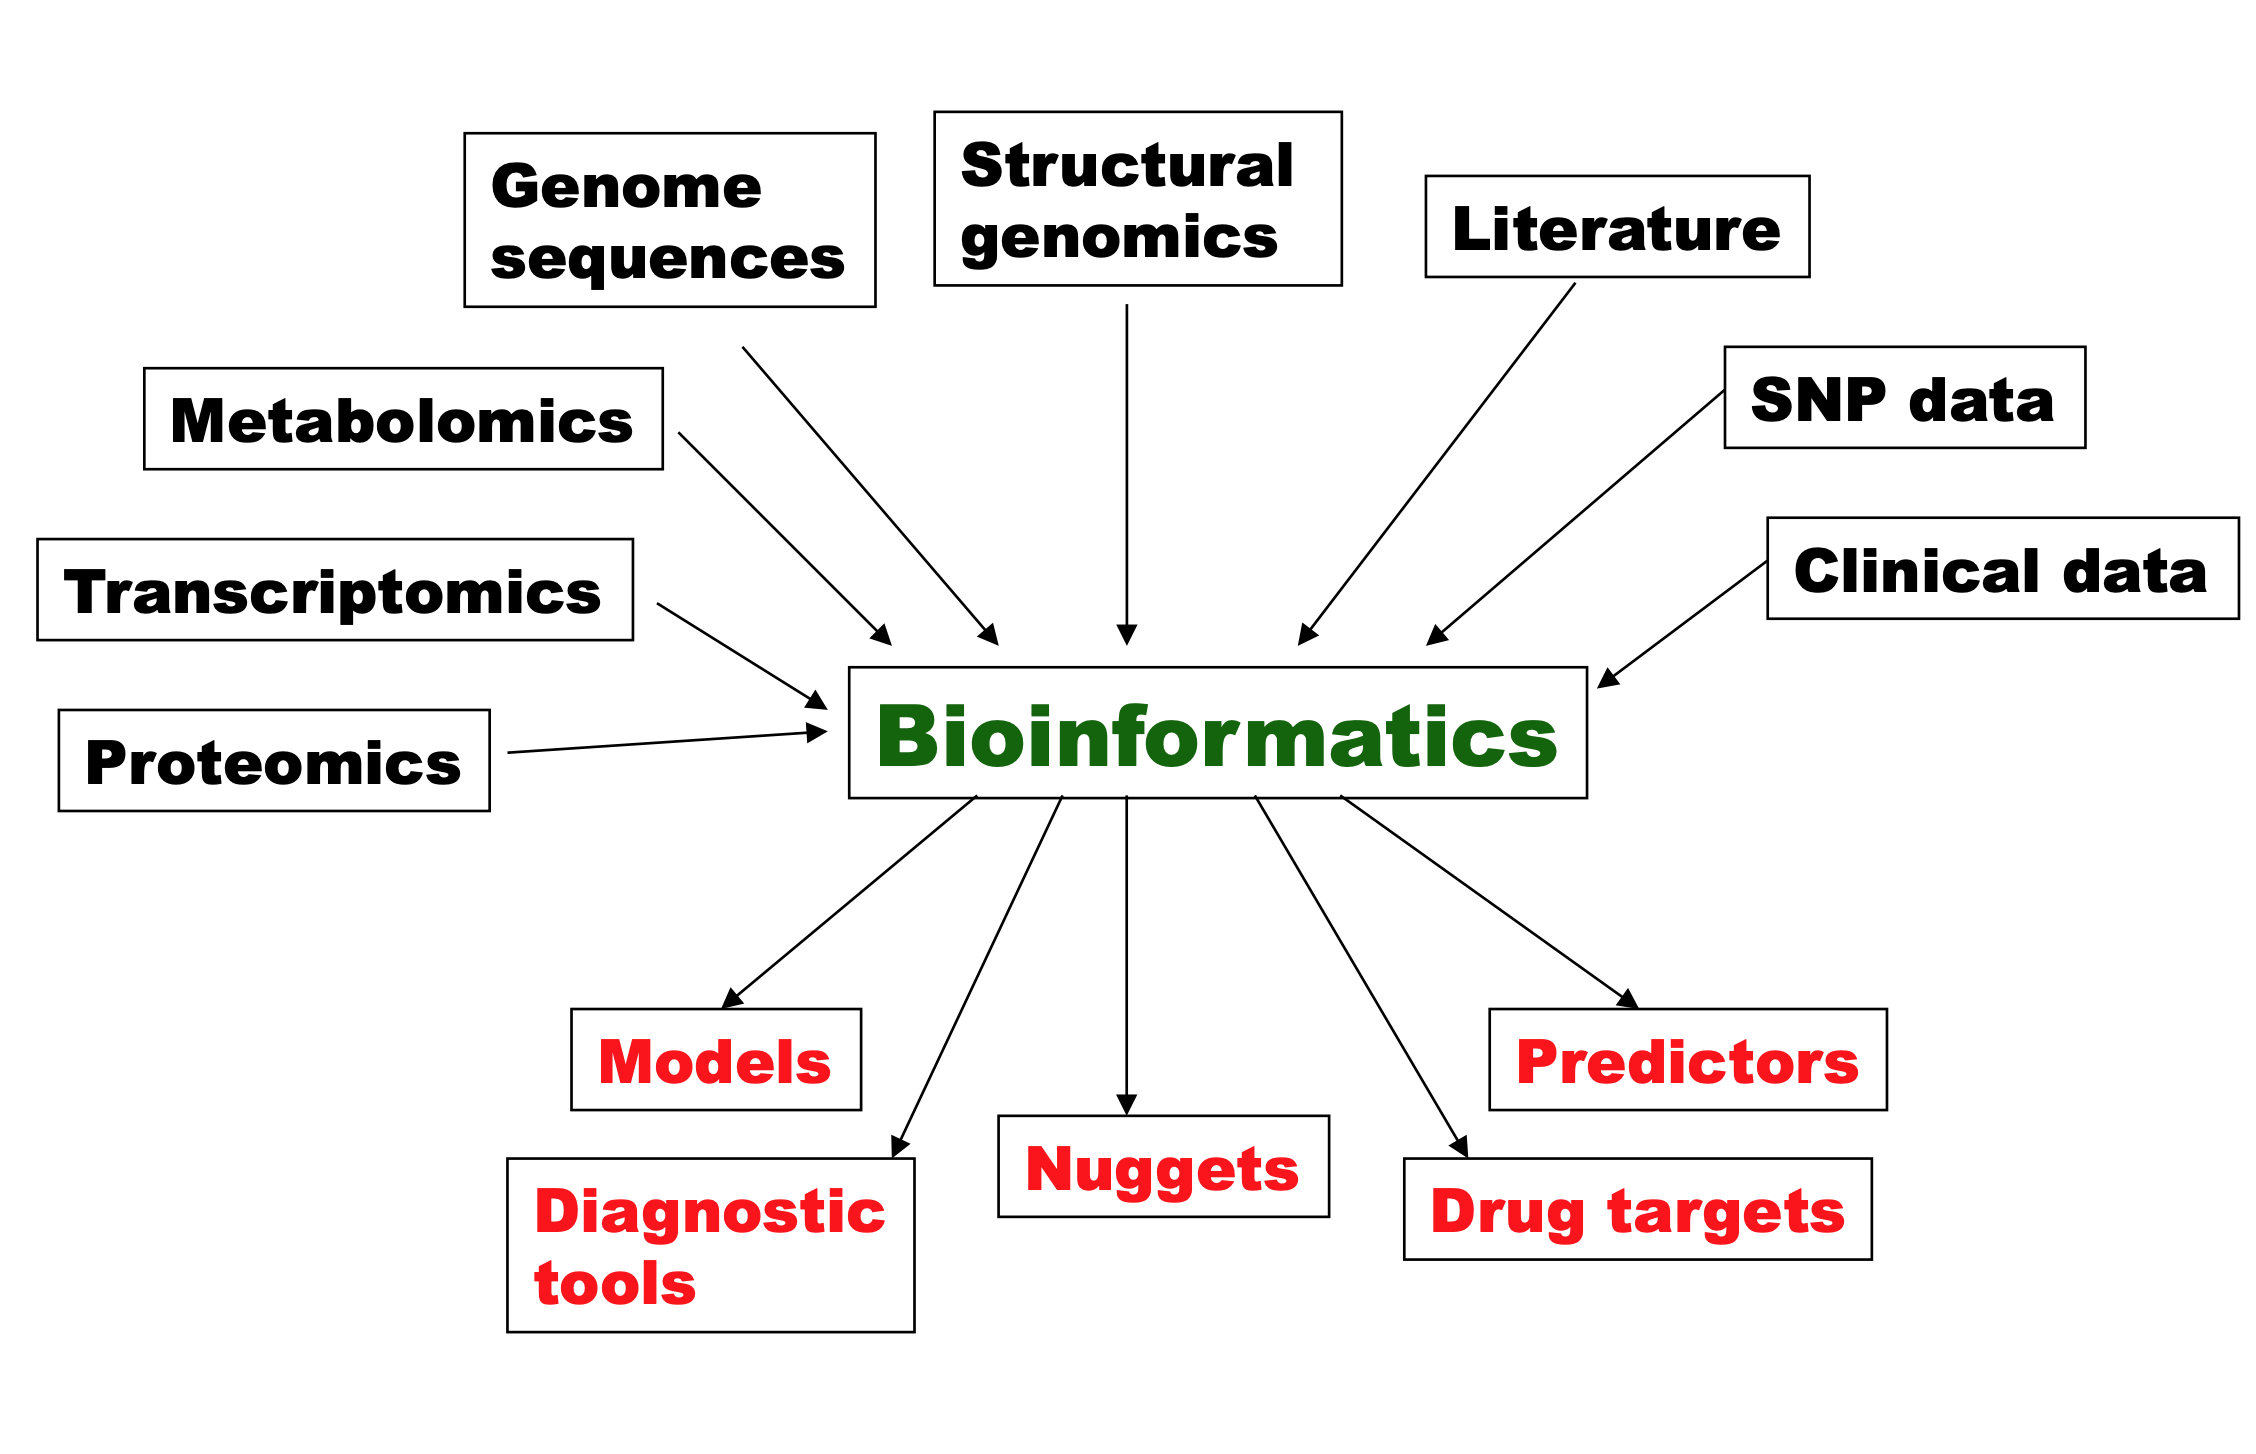 current research topics bioinformatics